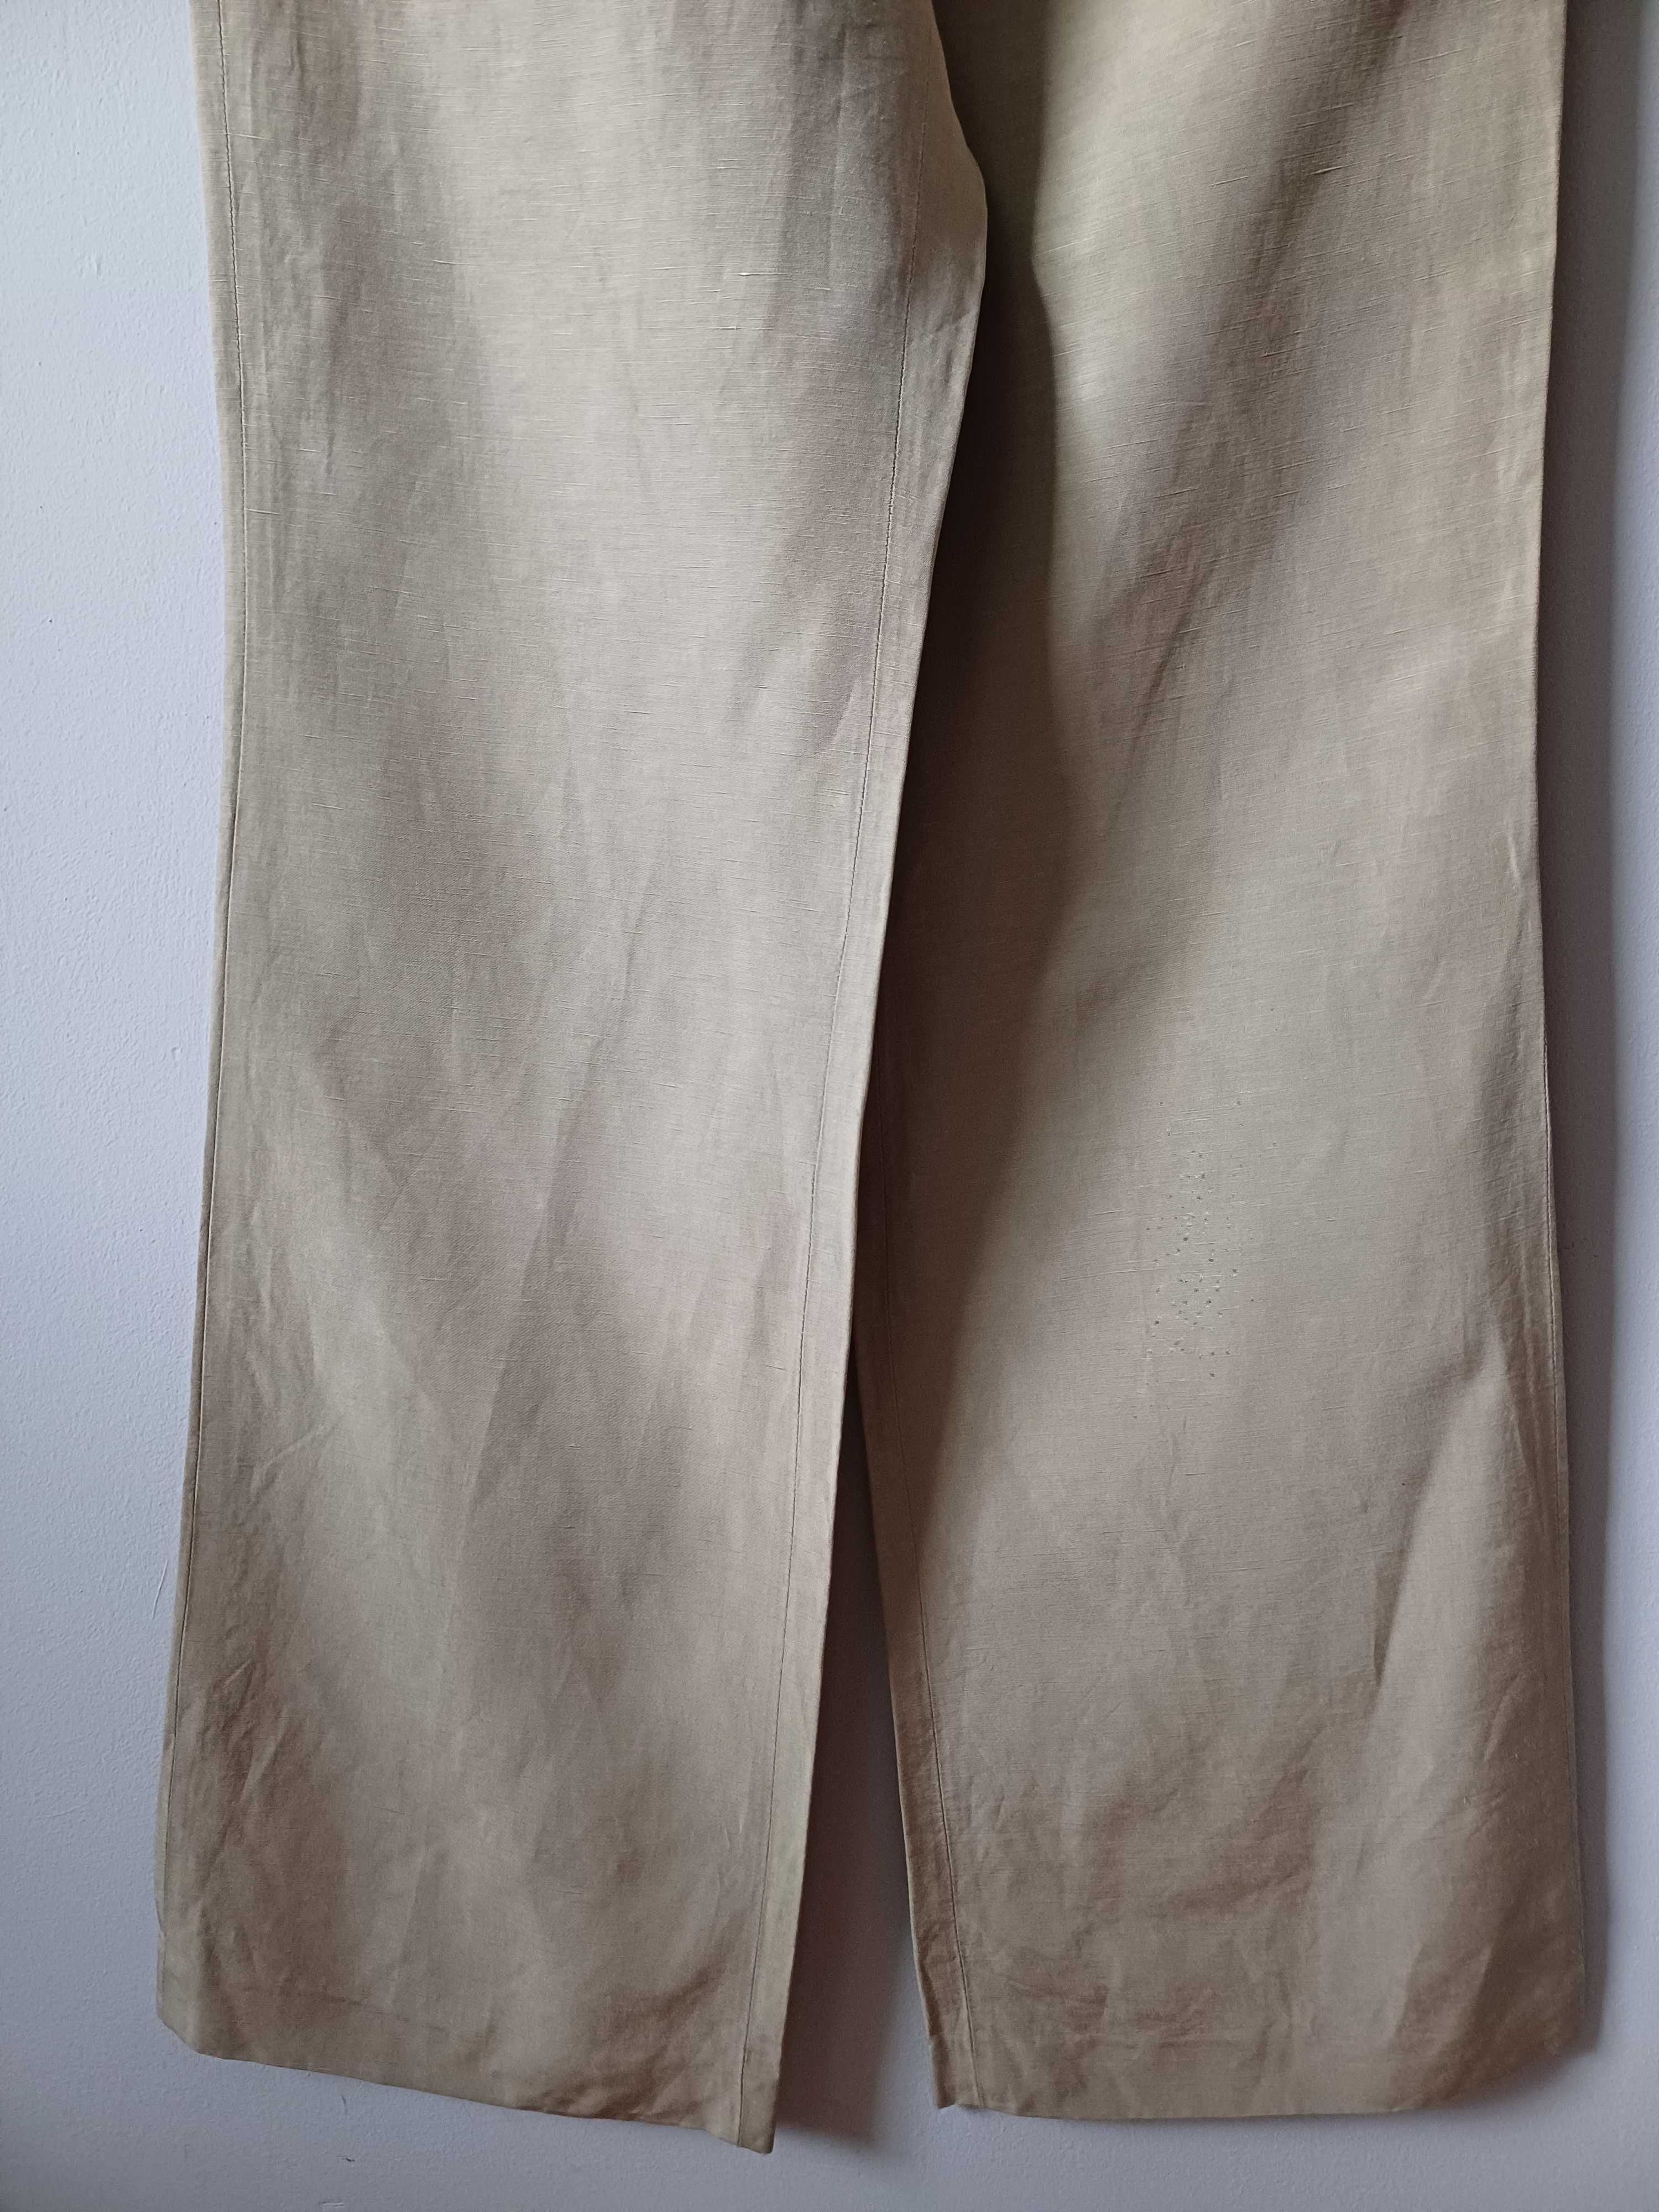 Spodnie Armani Collezioni jedwab len rozmiar L